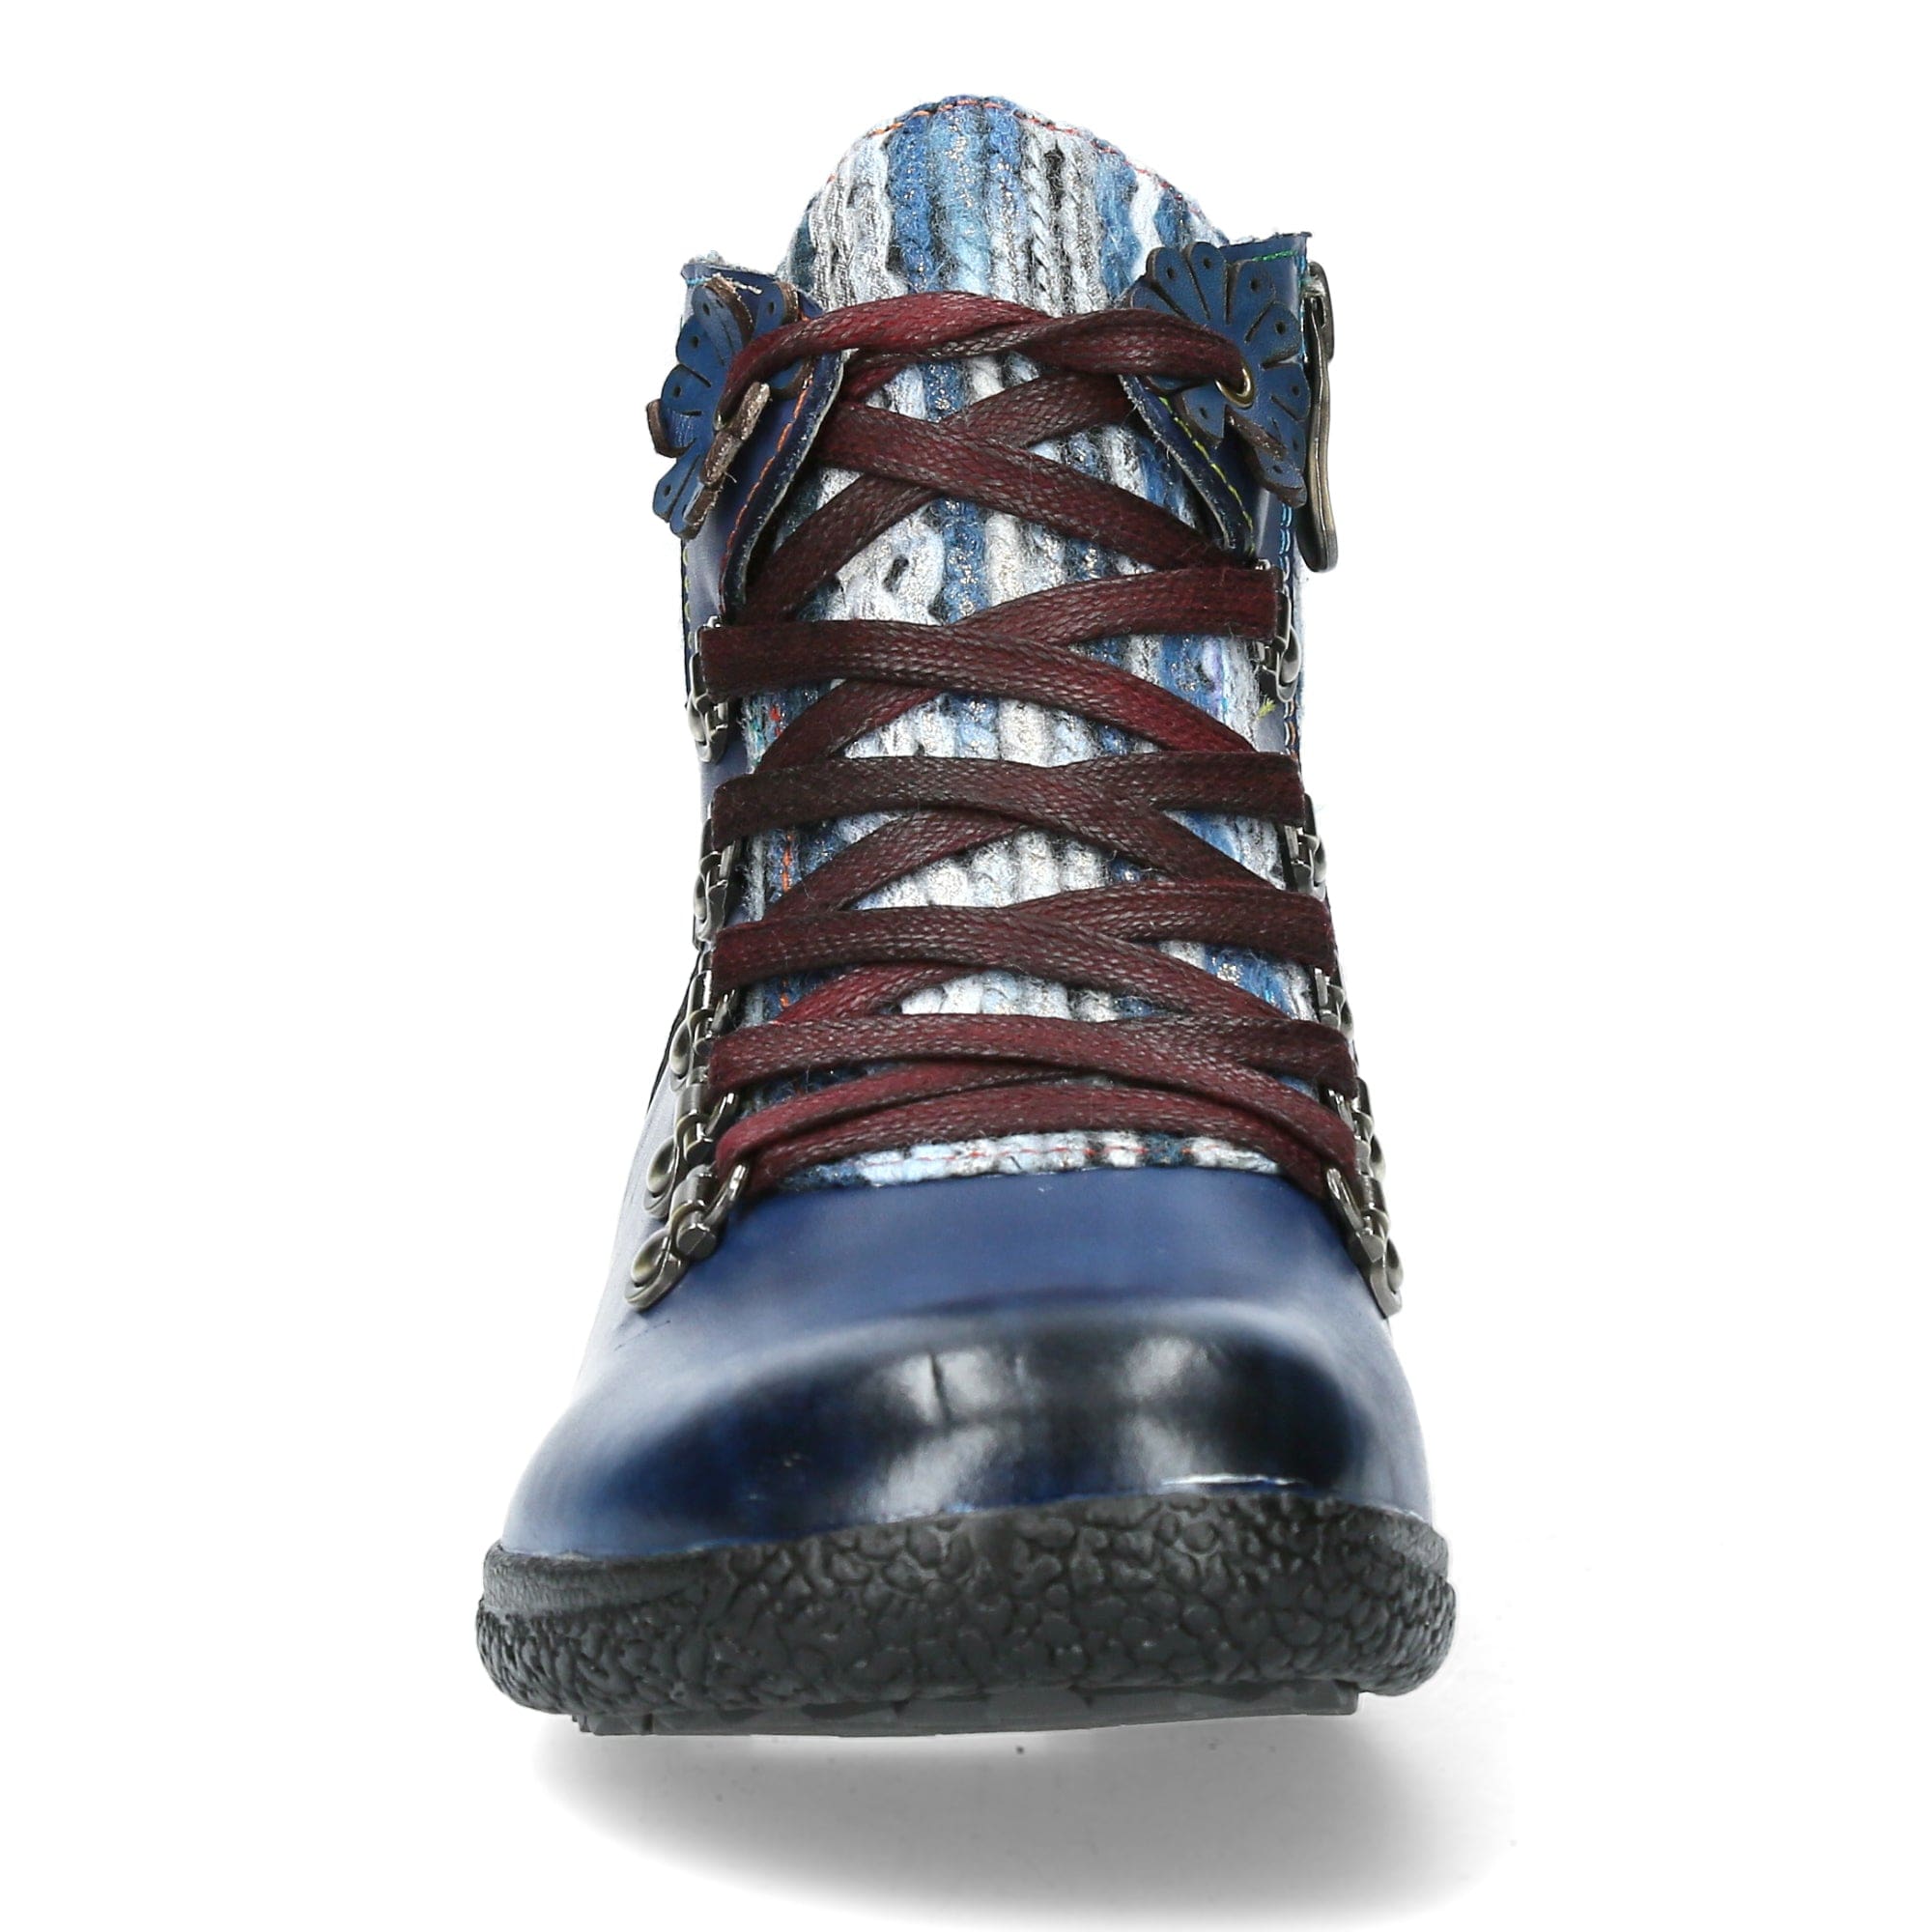 Schuh GOCTHO 01 - Boots